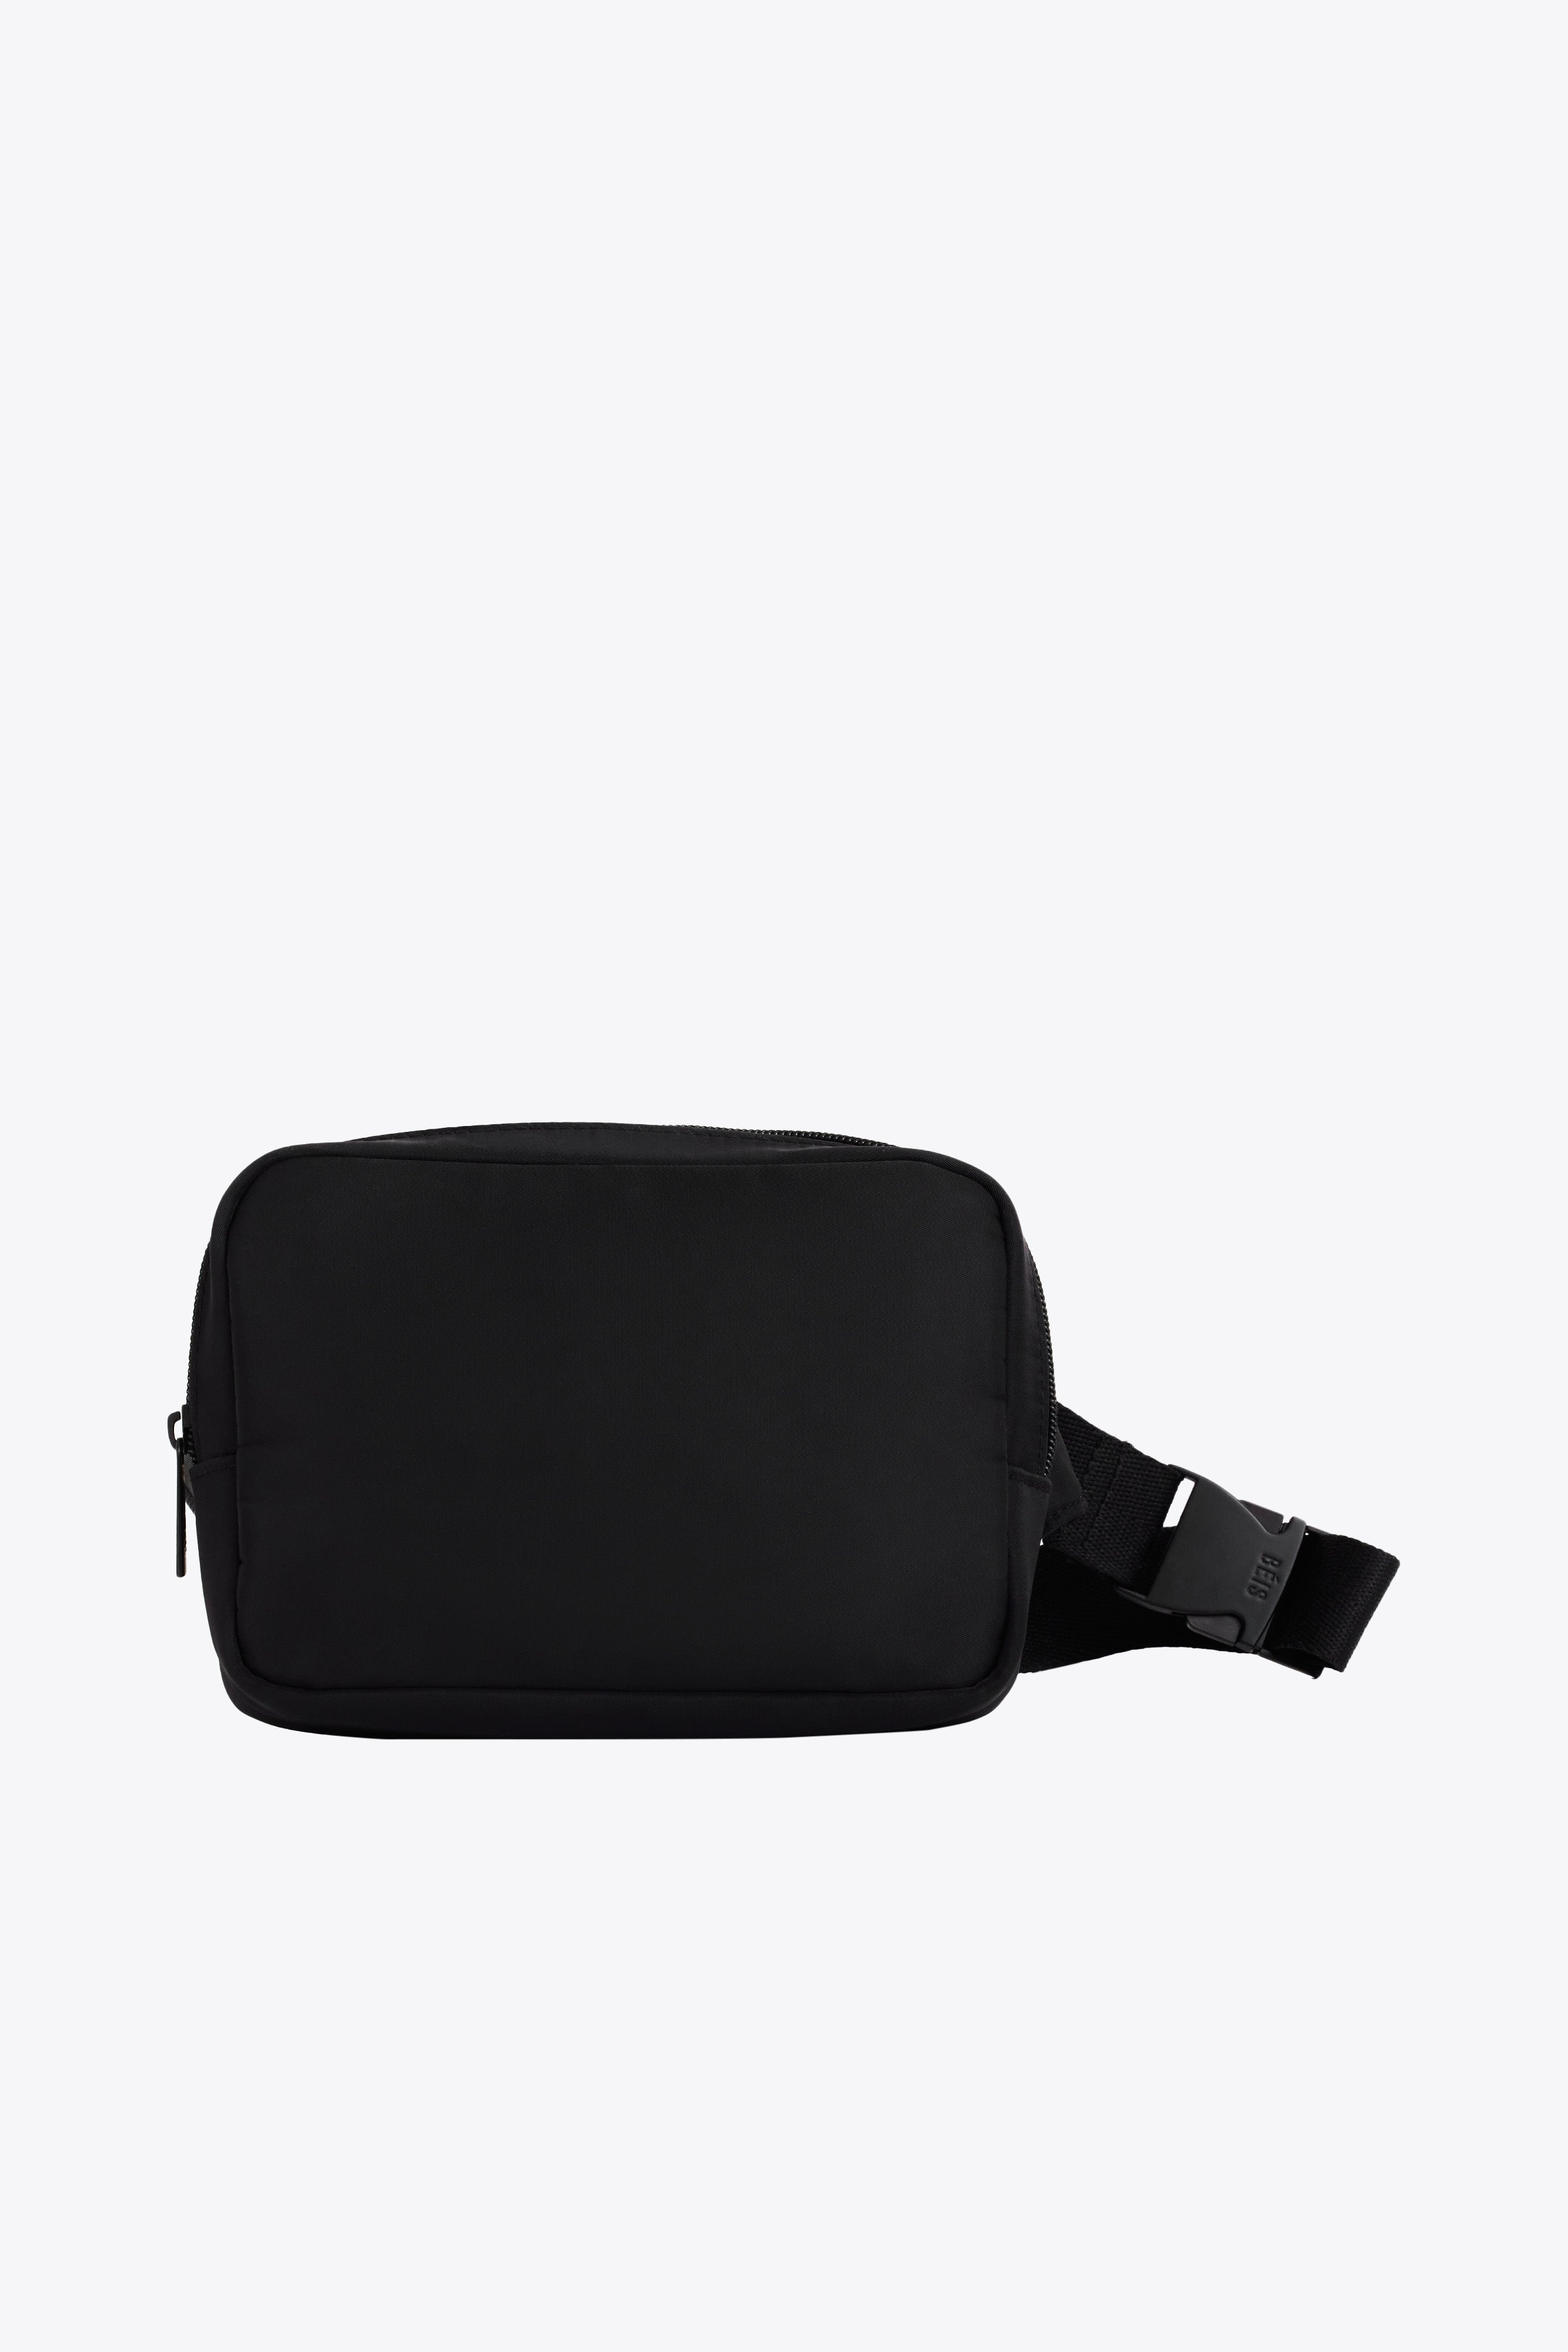 BÉIS 'The Belt Bag' In Black - Black Everyday Belt Bag